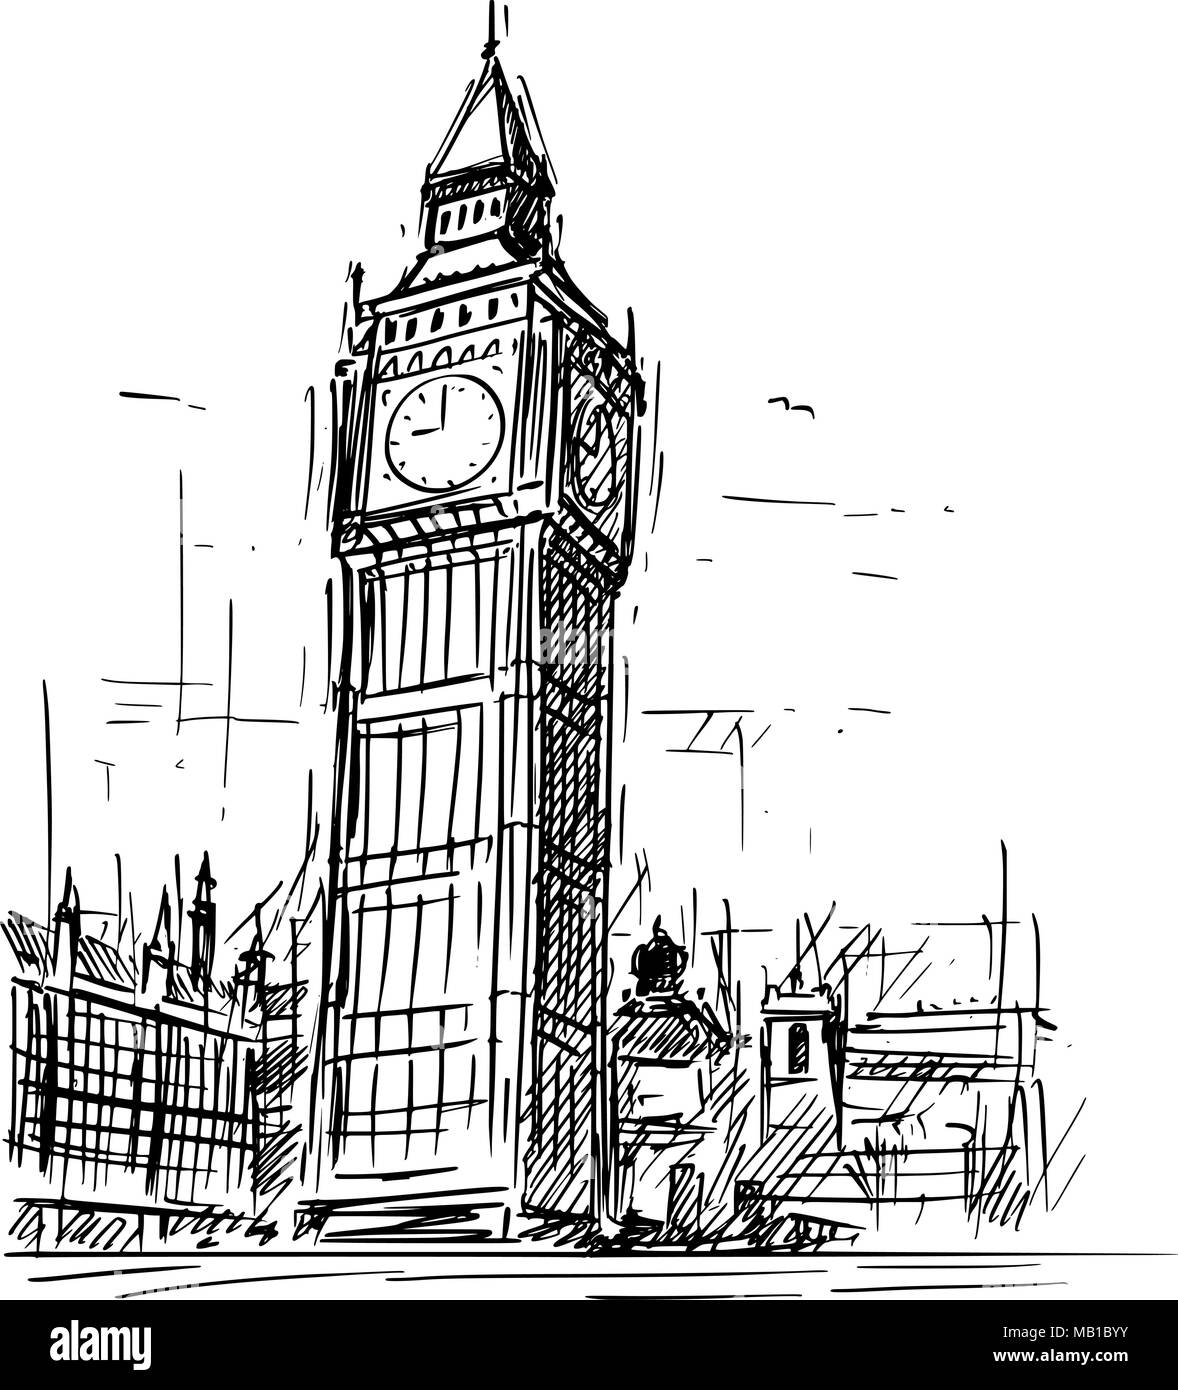 Cartoon Skizze des Big Ben Clock Tower in London, England, Vereinigtes Königreich Stock Vektor